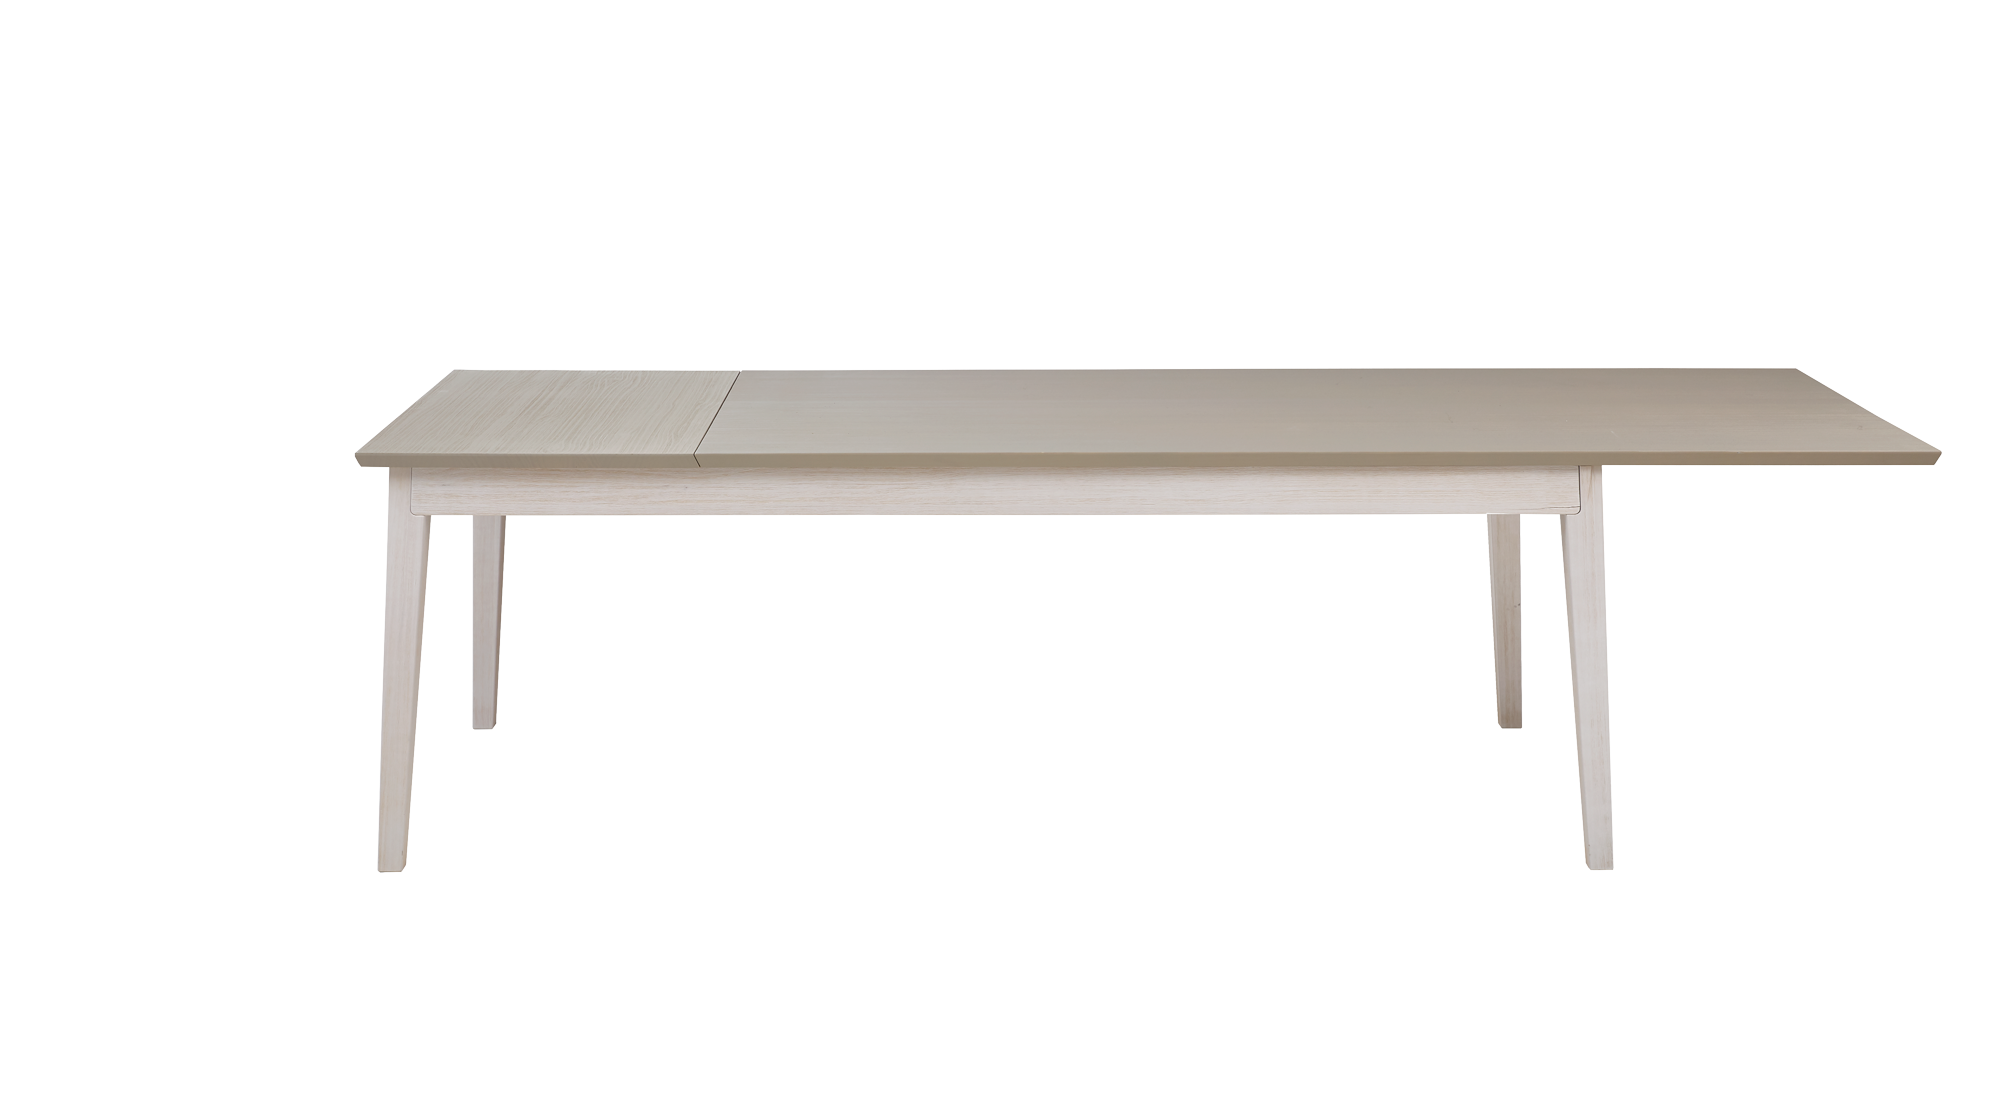 Abbildung Tischverlängerung ab L 160 cm